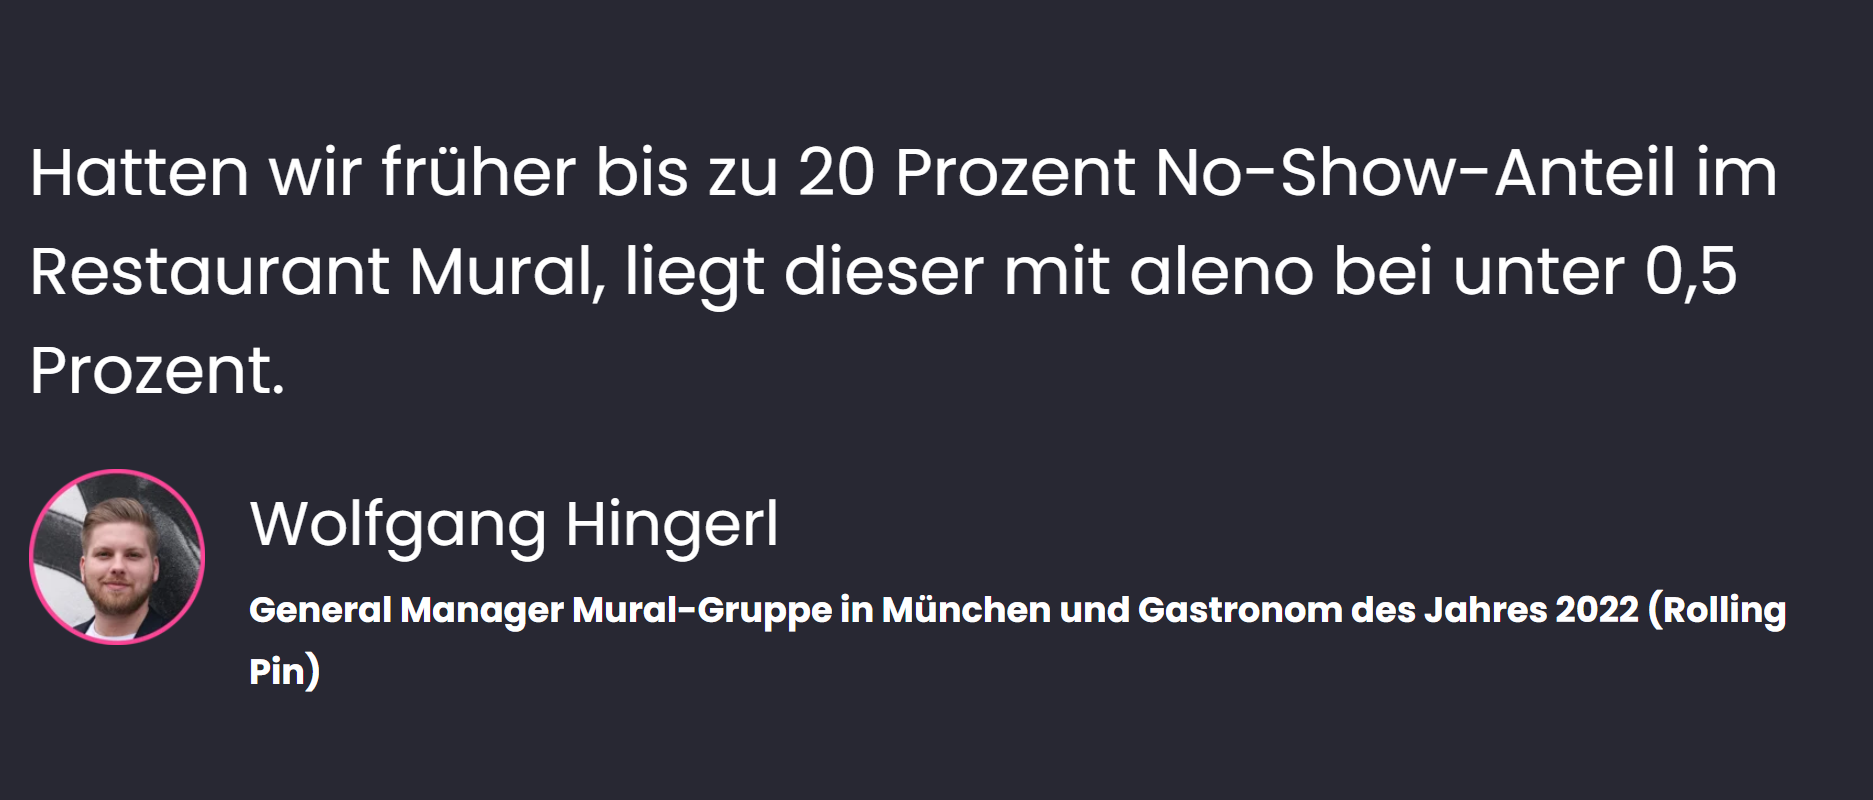 «Hatten wir früher bis zu 20 Prozent No-Show-Anteil im Restaurant Mural, liegt dieser mit aleno bei unter 0,5 Prozent», sagt Wolfgang Hingerl, General Manager Mural-Gruppe in München und Gastronom des Jahres 2022 (Rolling Pin Magazin).